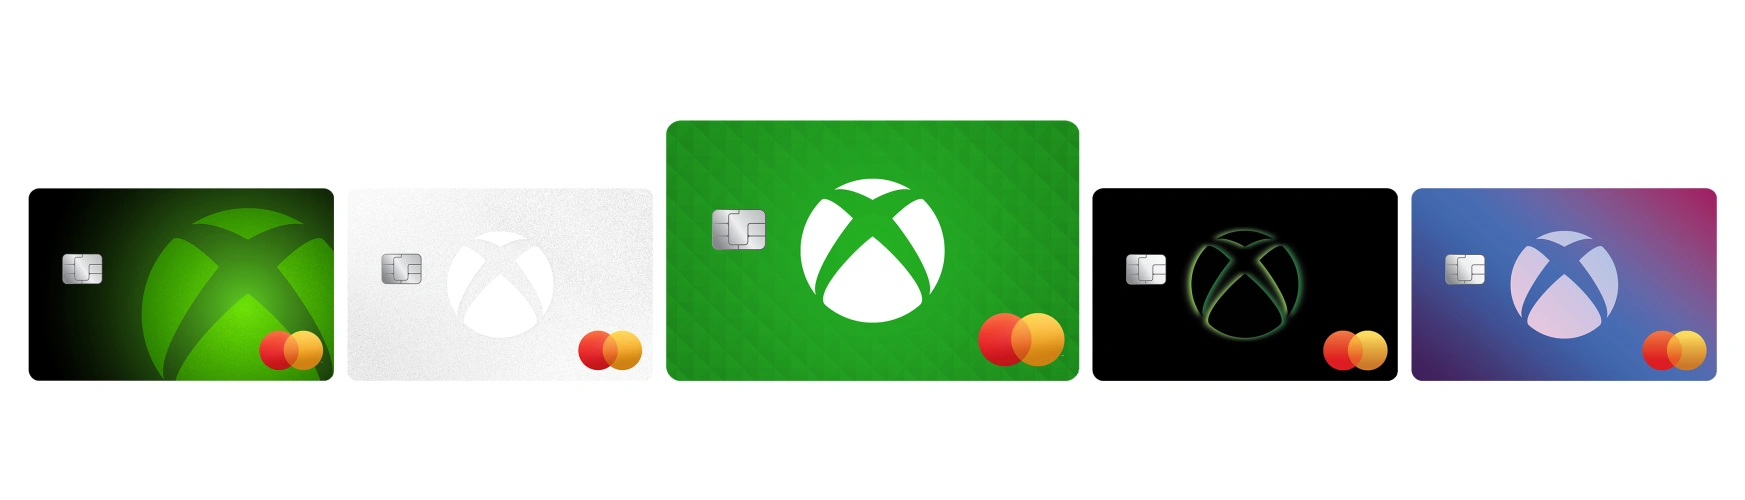 文章:《Xbox信用卡将为游戏提供奖励积分》_配图1